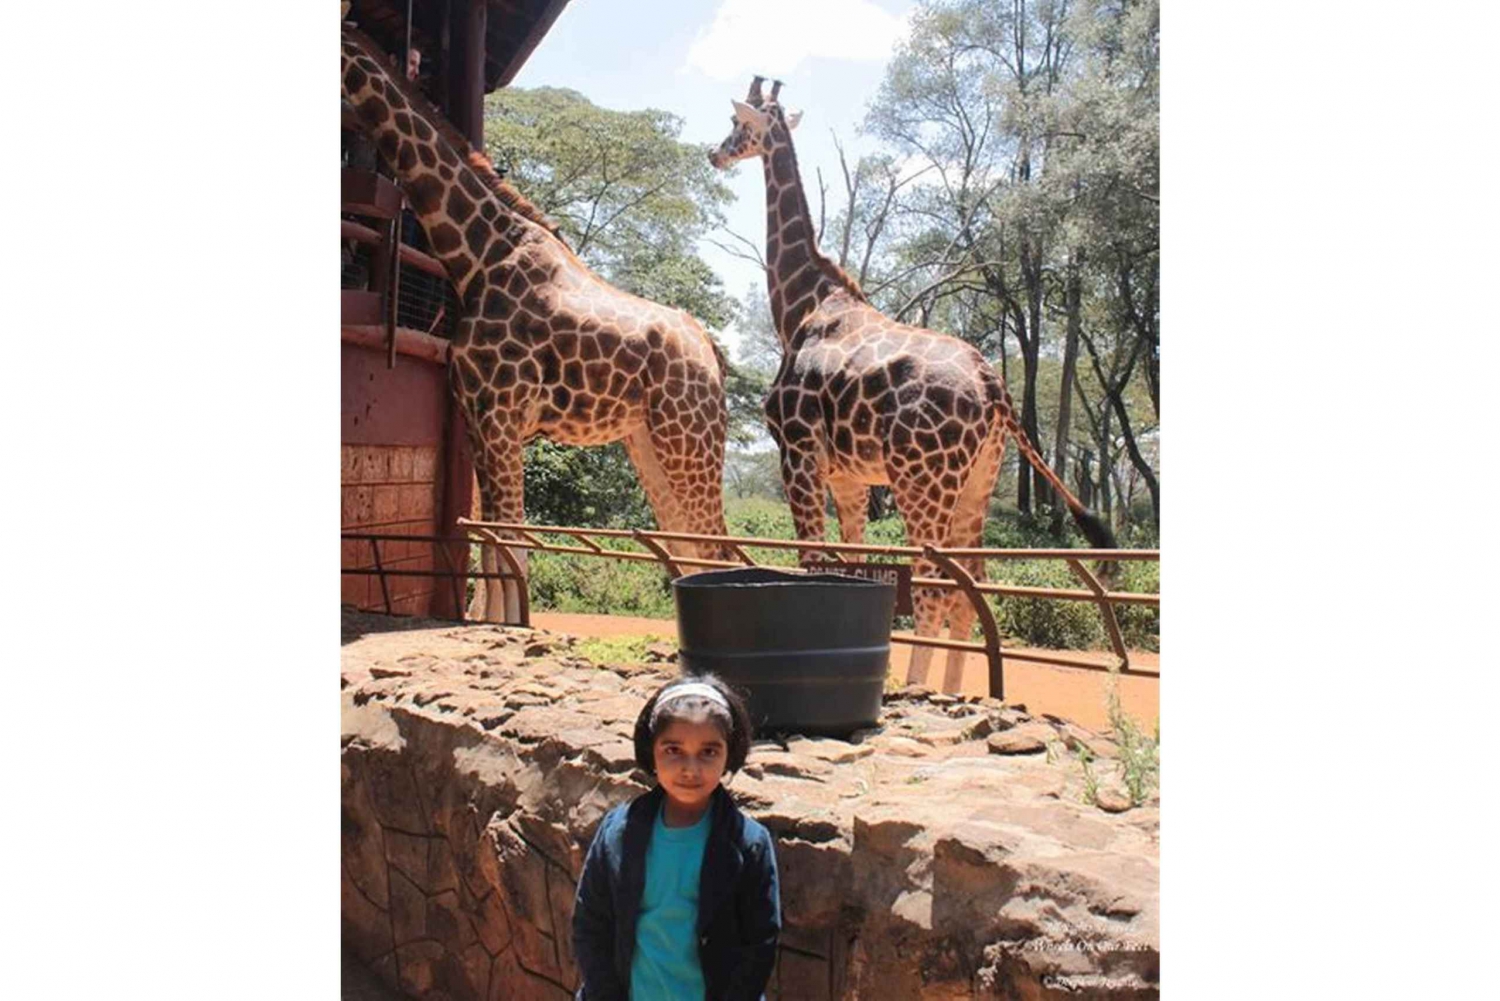 Excursão ao Giraffe Center e ao Museu Karen Blixen saindo de Nairóbi